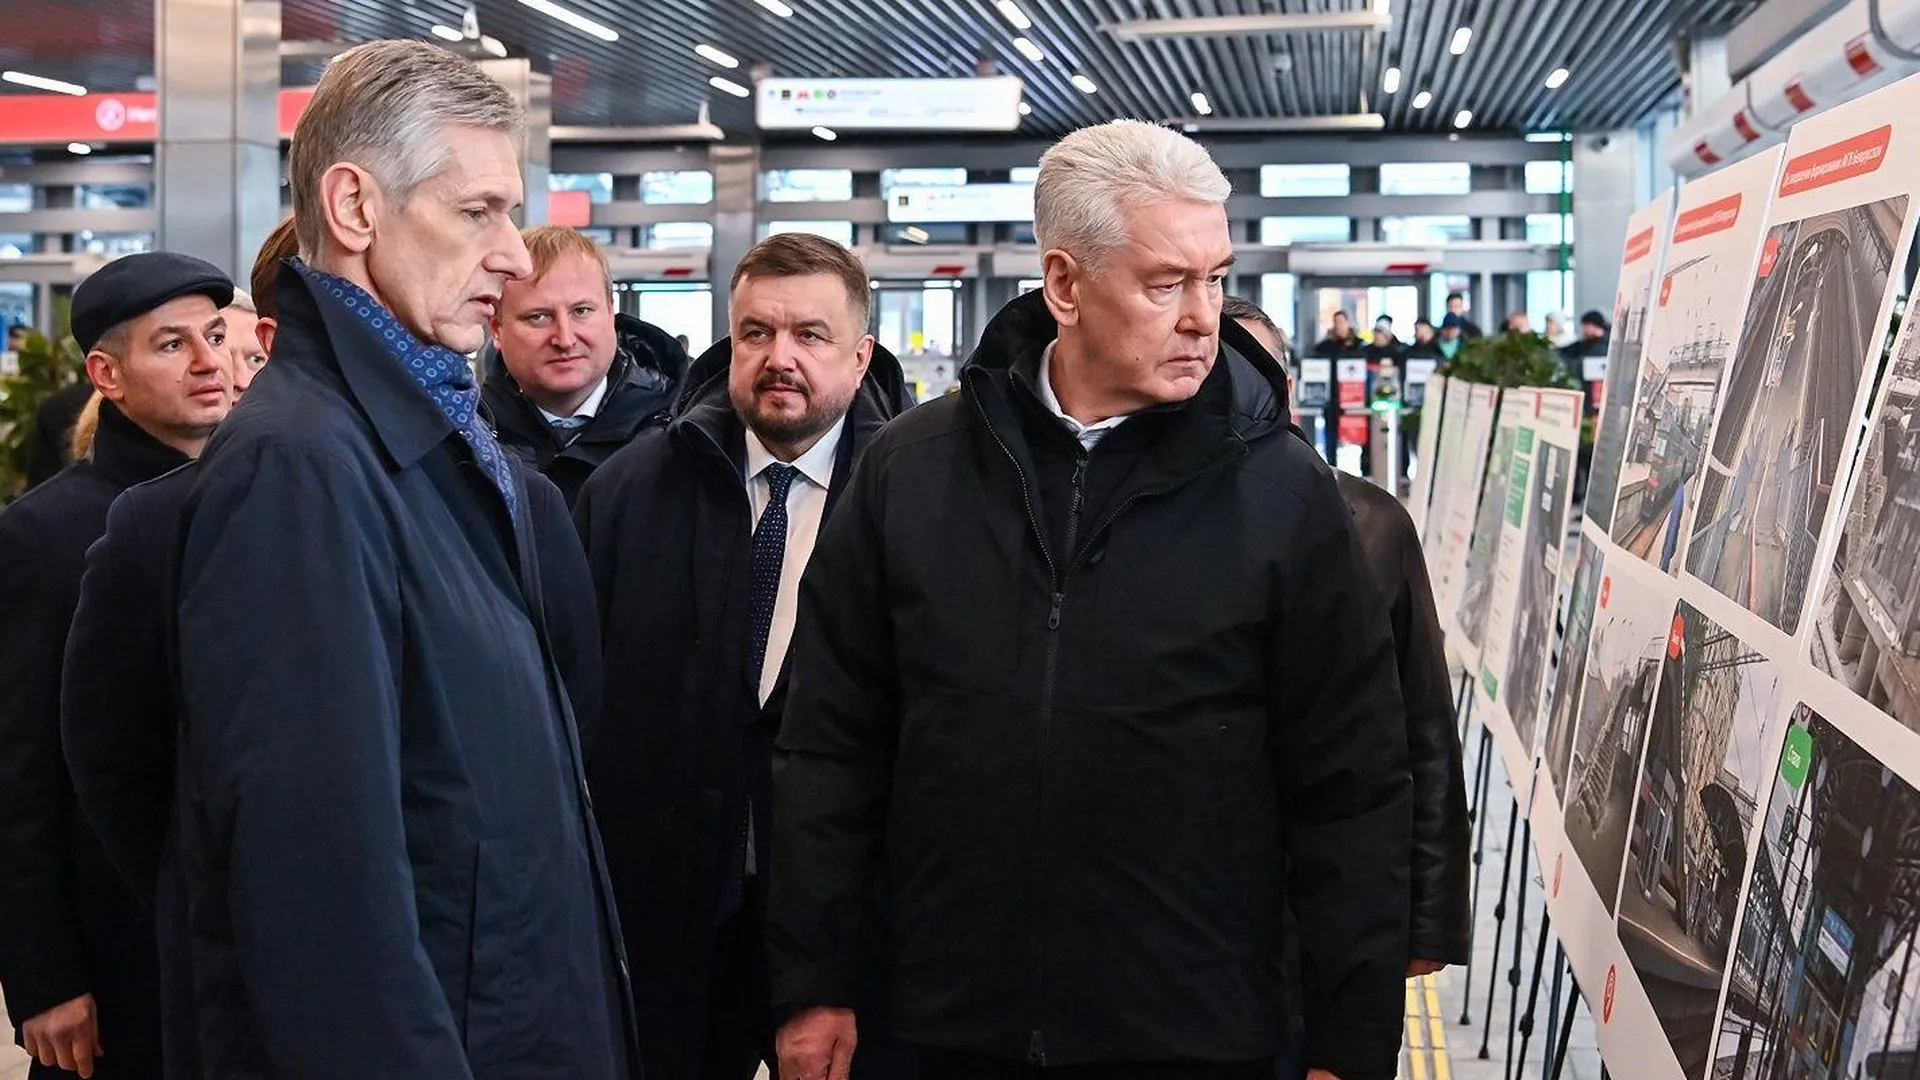 Обновленный пассажирский вестибюль открыли на Белорусском вокзале в Москве